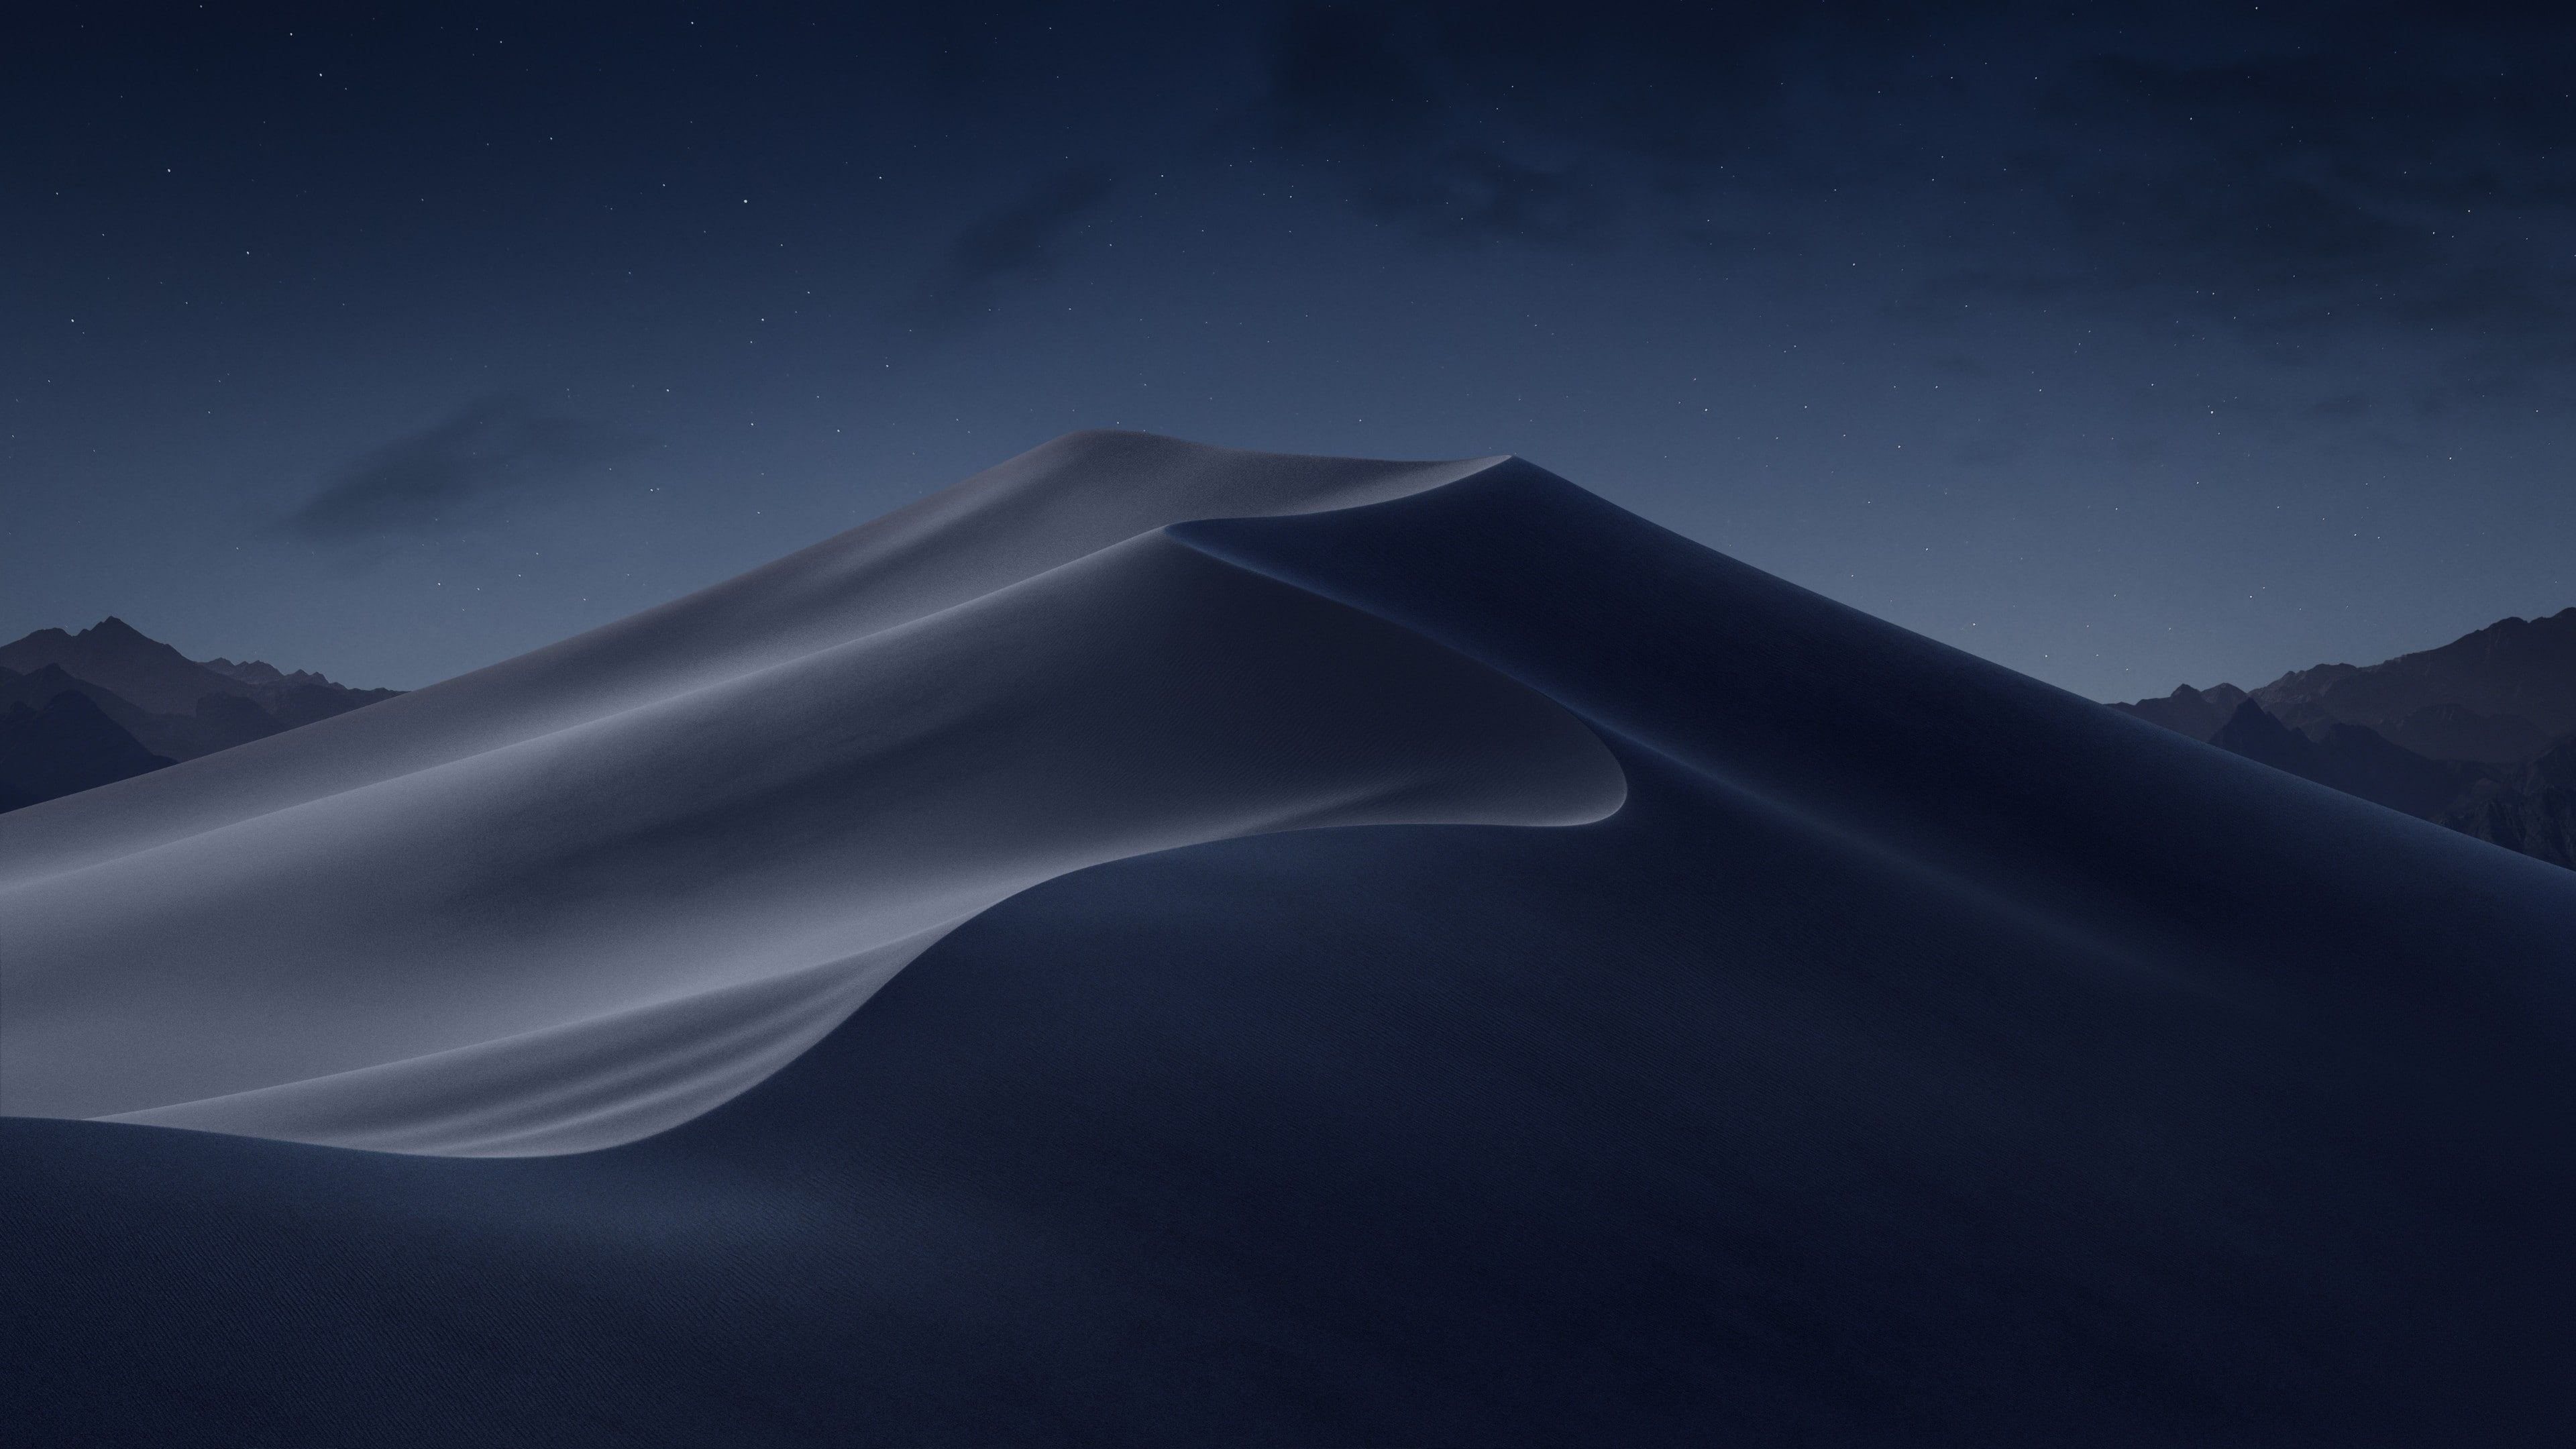 HD wallpaper: blue landscape, night sky, desert, dune, starry sky, sand dune Wallpaper Market